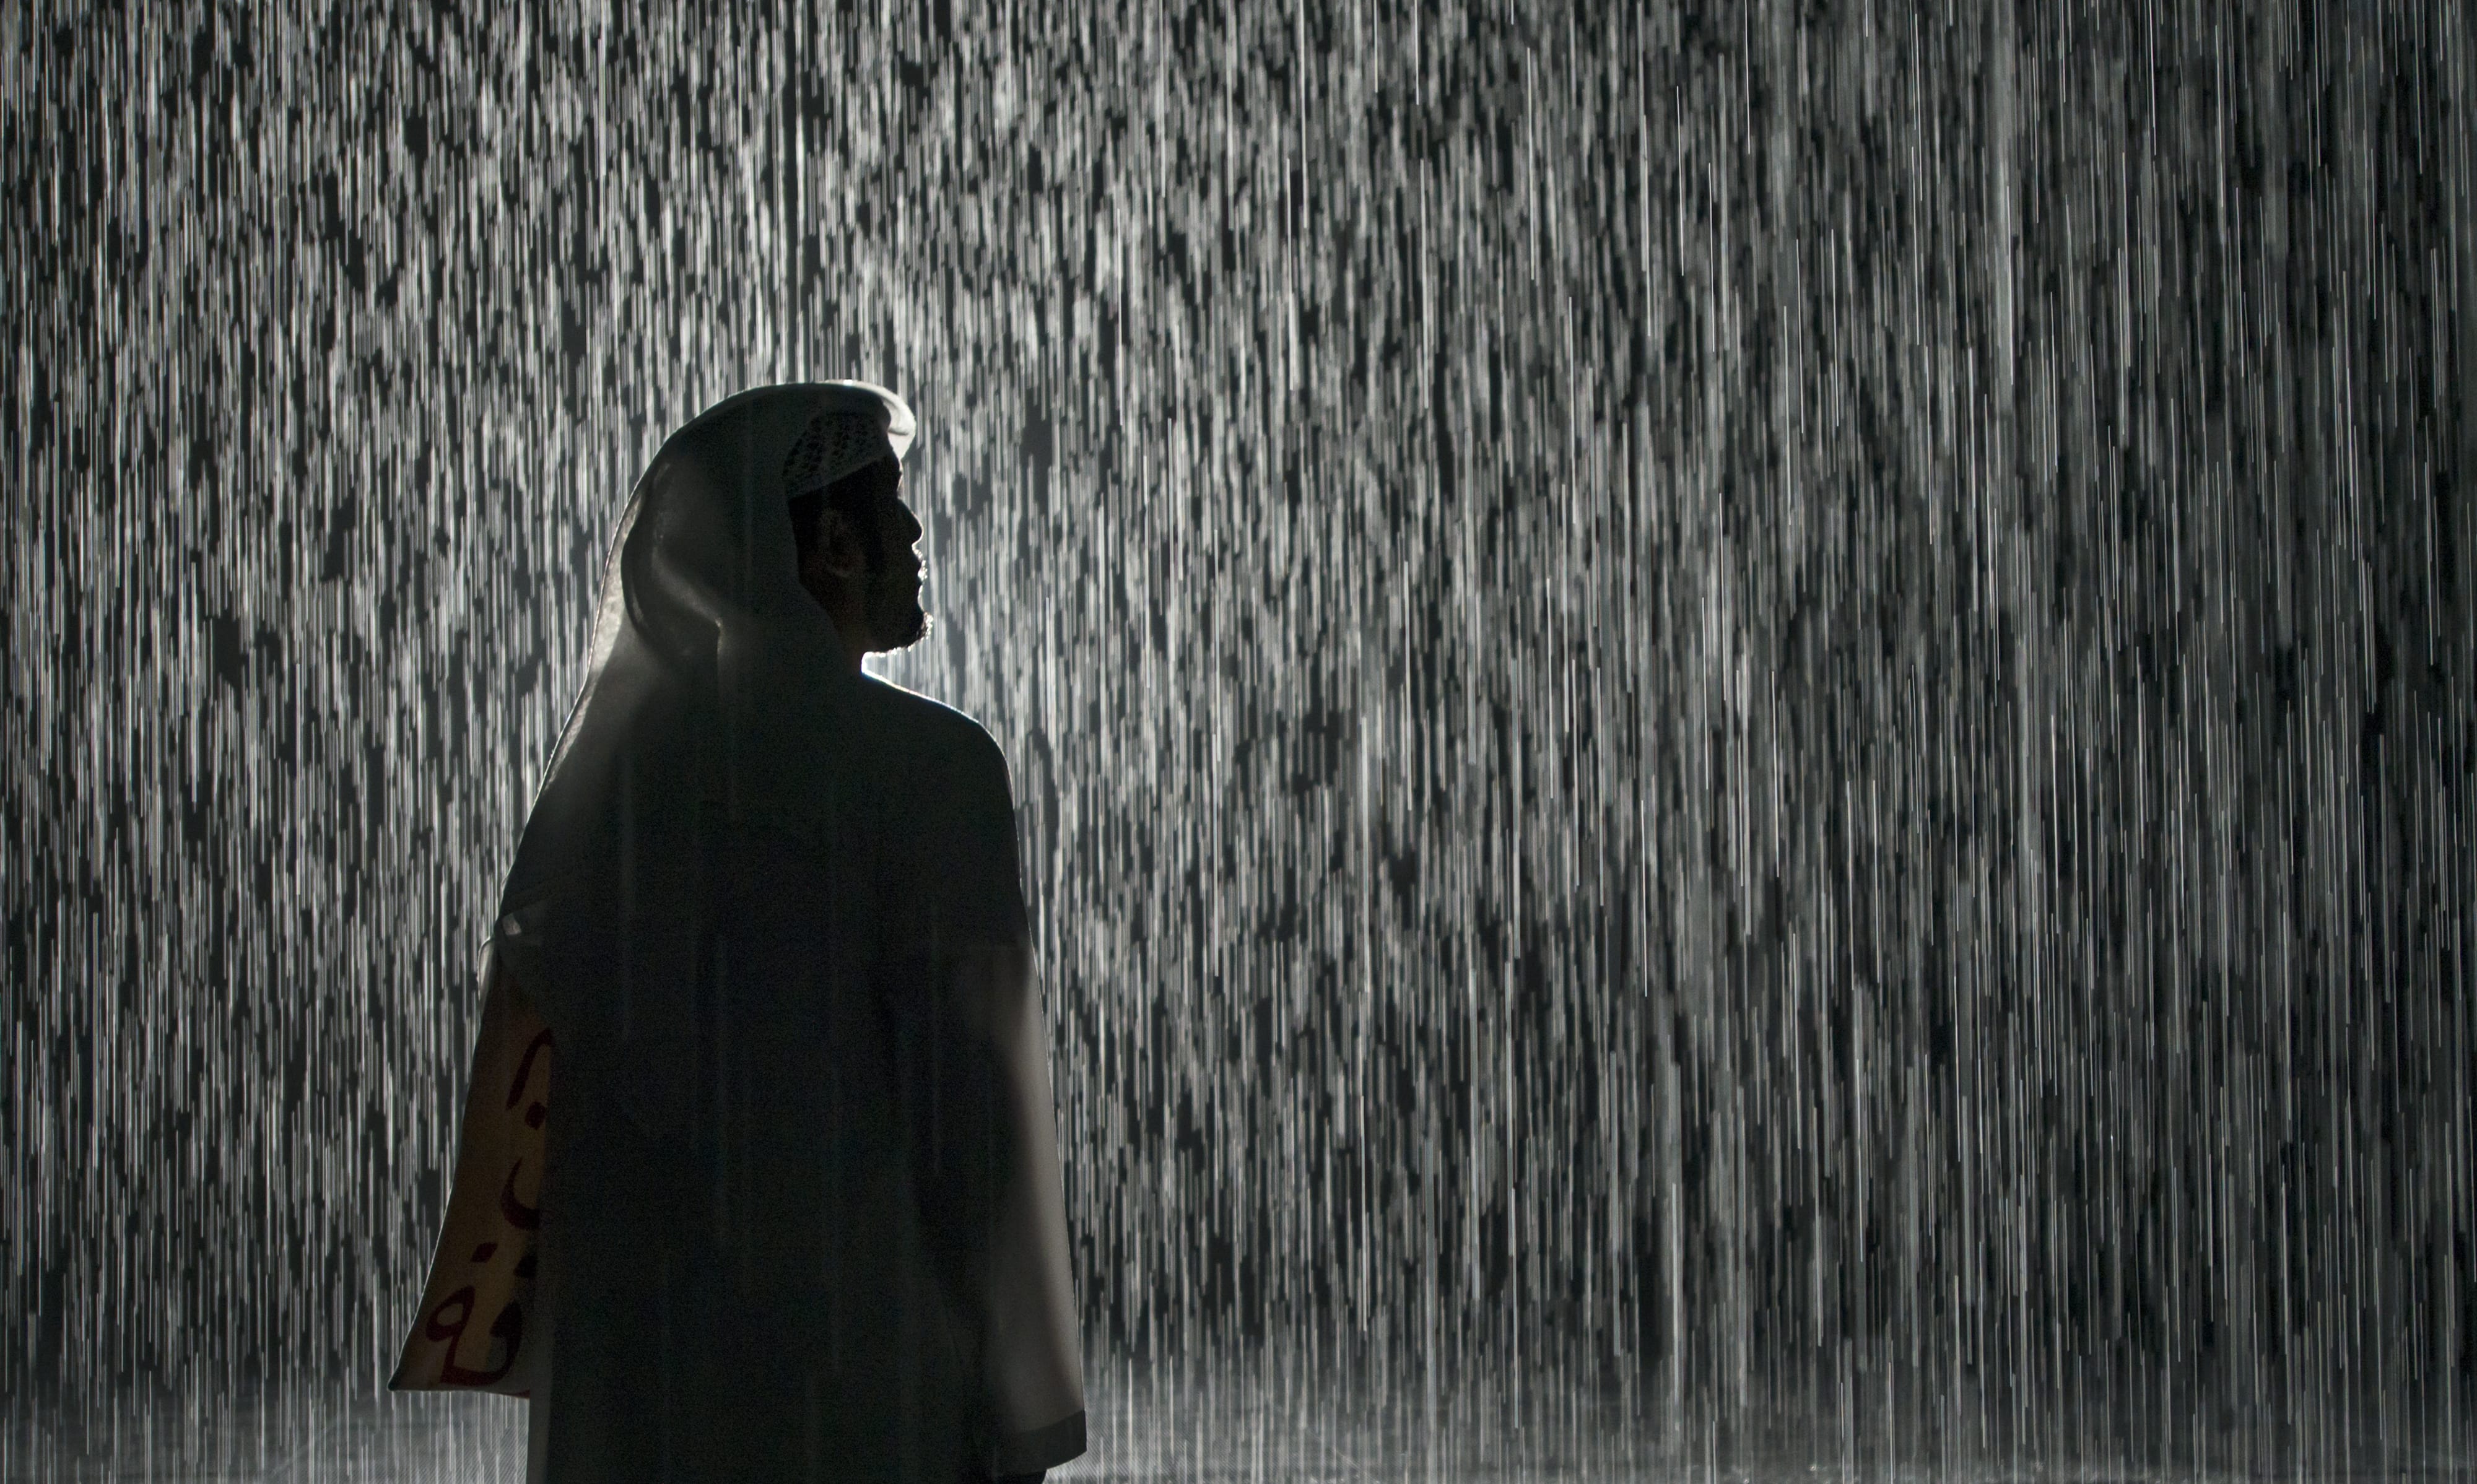 Rain Room, Sharjah